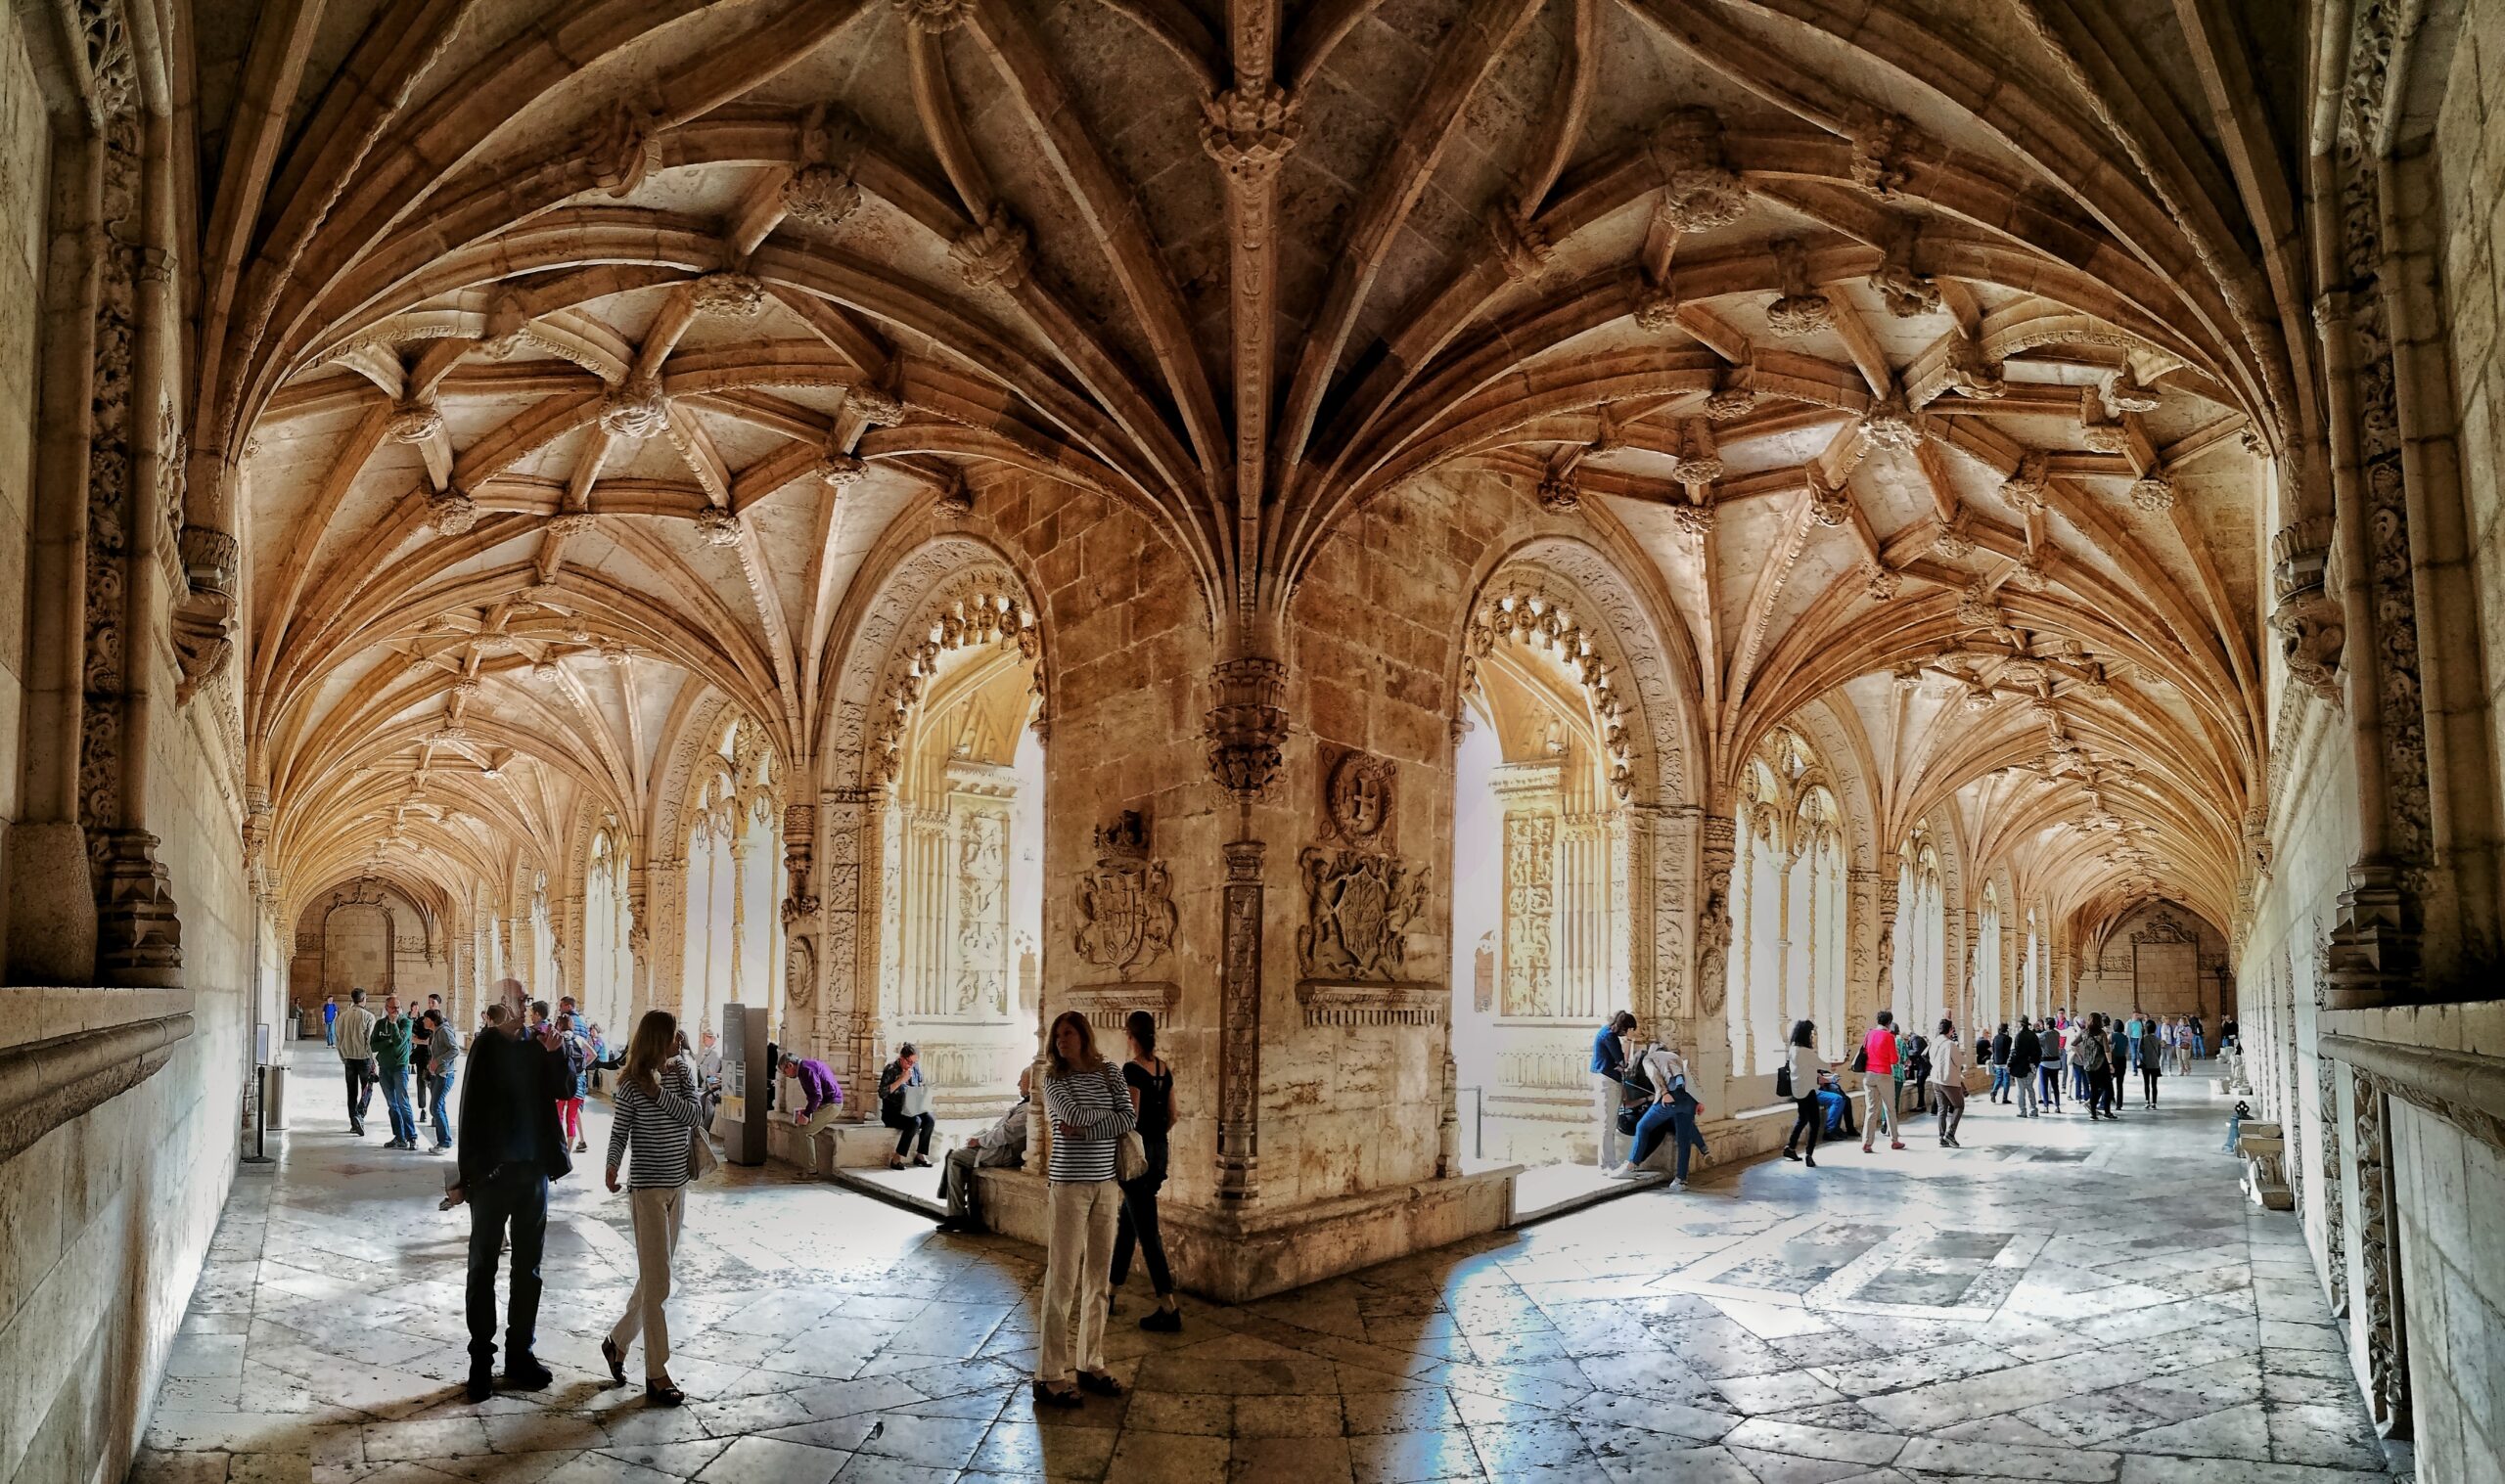 Portogallo, Lisbona, il chiostro del Monastero dos Jerònimos.